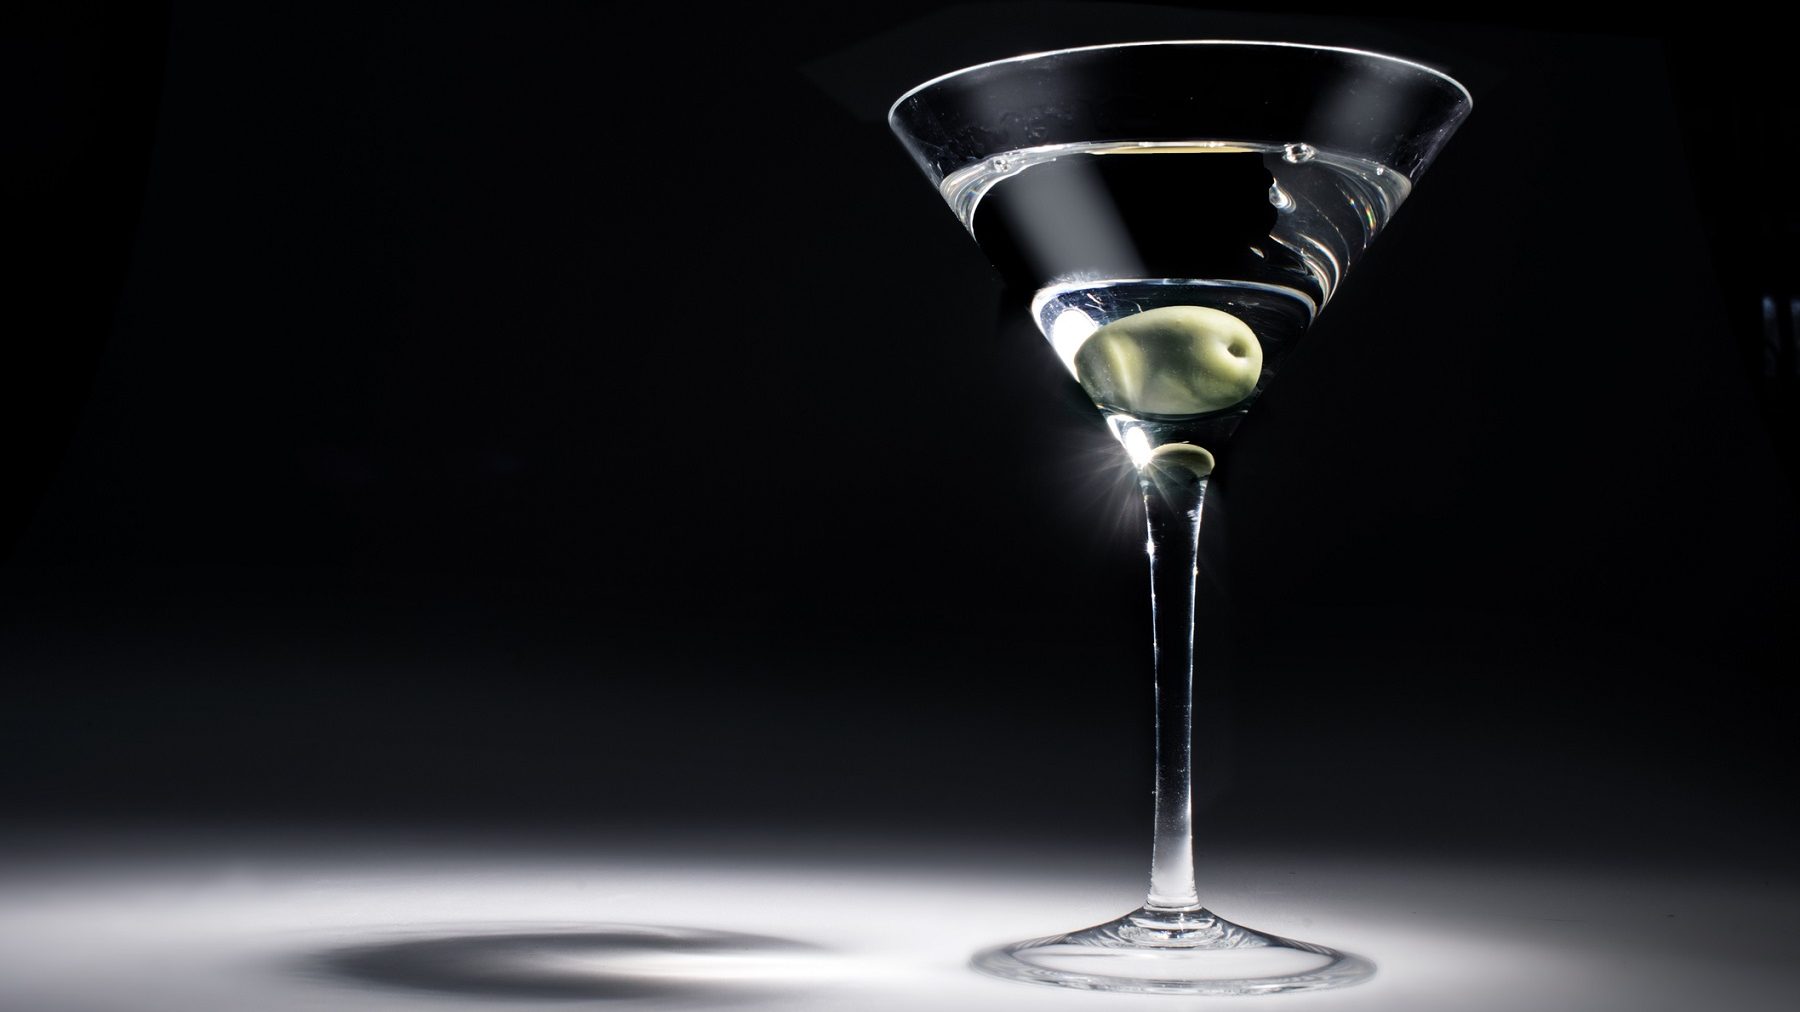 James Bonds Martini mit einer Olive in einem Martiniglas. Das Glas wird aus einer Richtung stark beleuchtet, der Hintergrund und Boden sind dunkel.